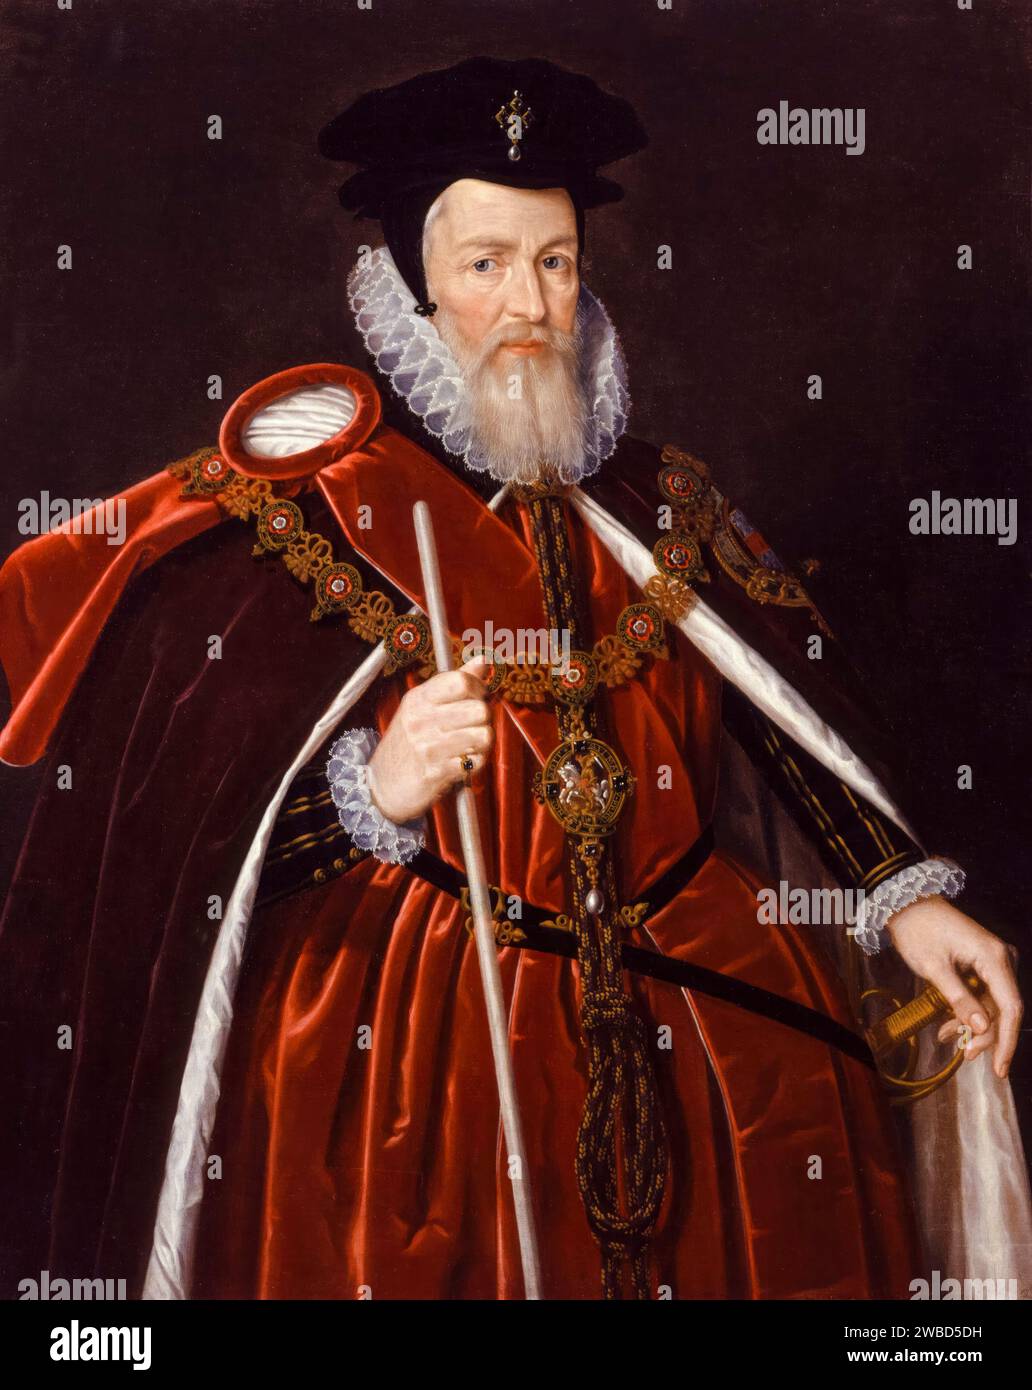 William Cecil, i barone Burghley, Lord Burghley (1520-1598), statista inglese, consigliere capo della regina Elisabetta i, ritratto dipinto ad olio su tavola di Marcus Gheeraerts il giovane (attribuito), dopo il 1585 Foto Stock